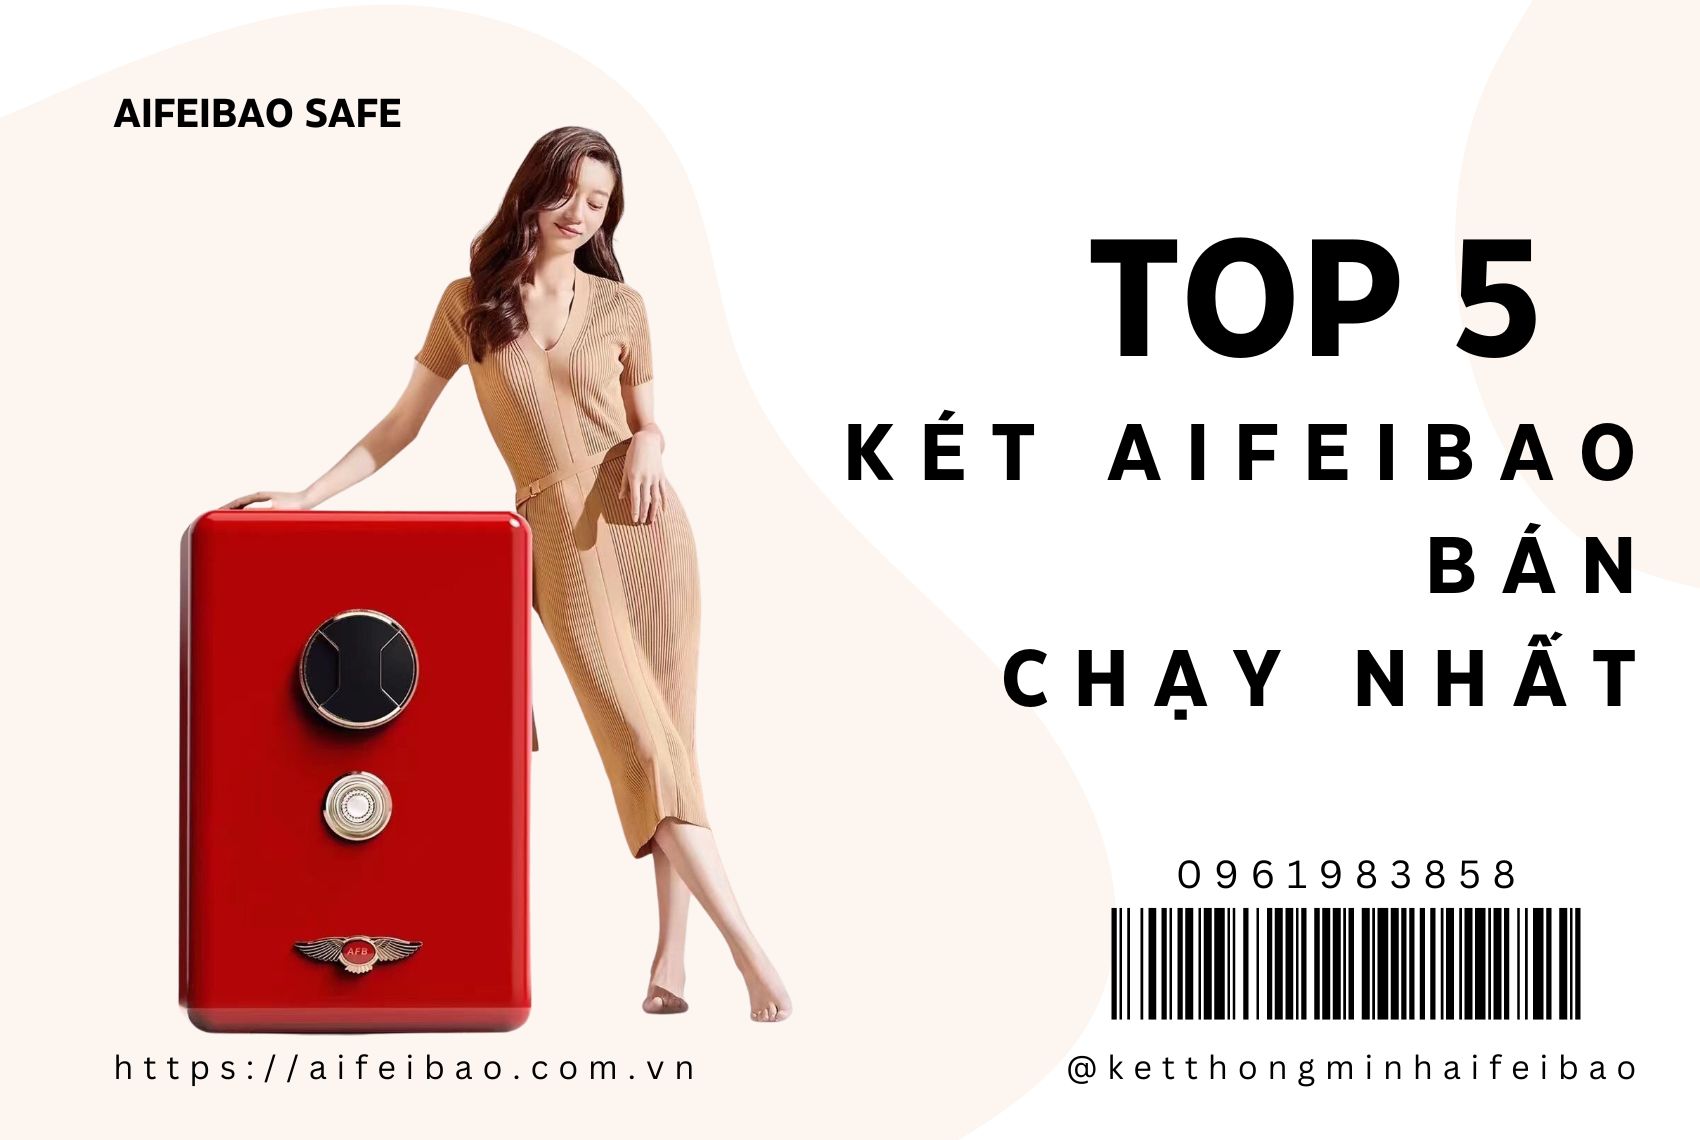 Top 5 Aifeibao Safe